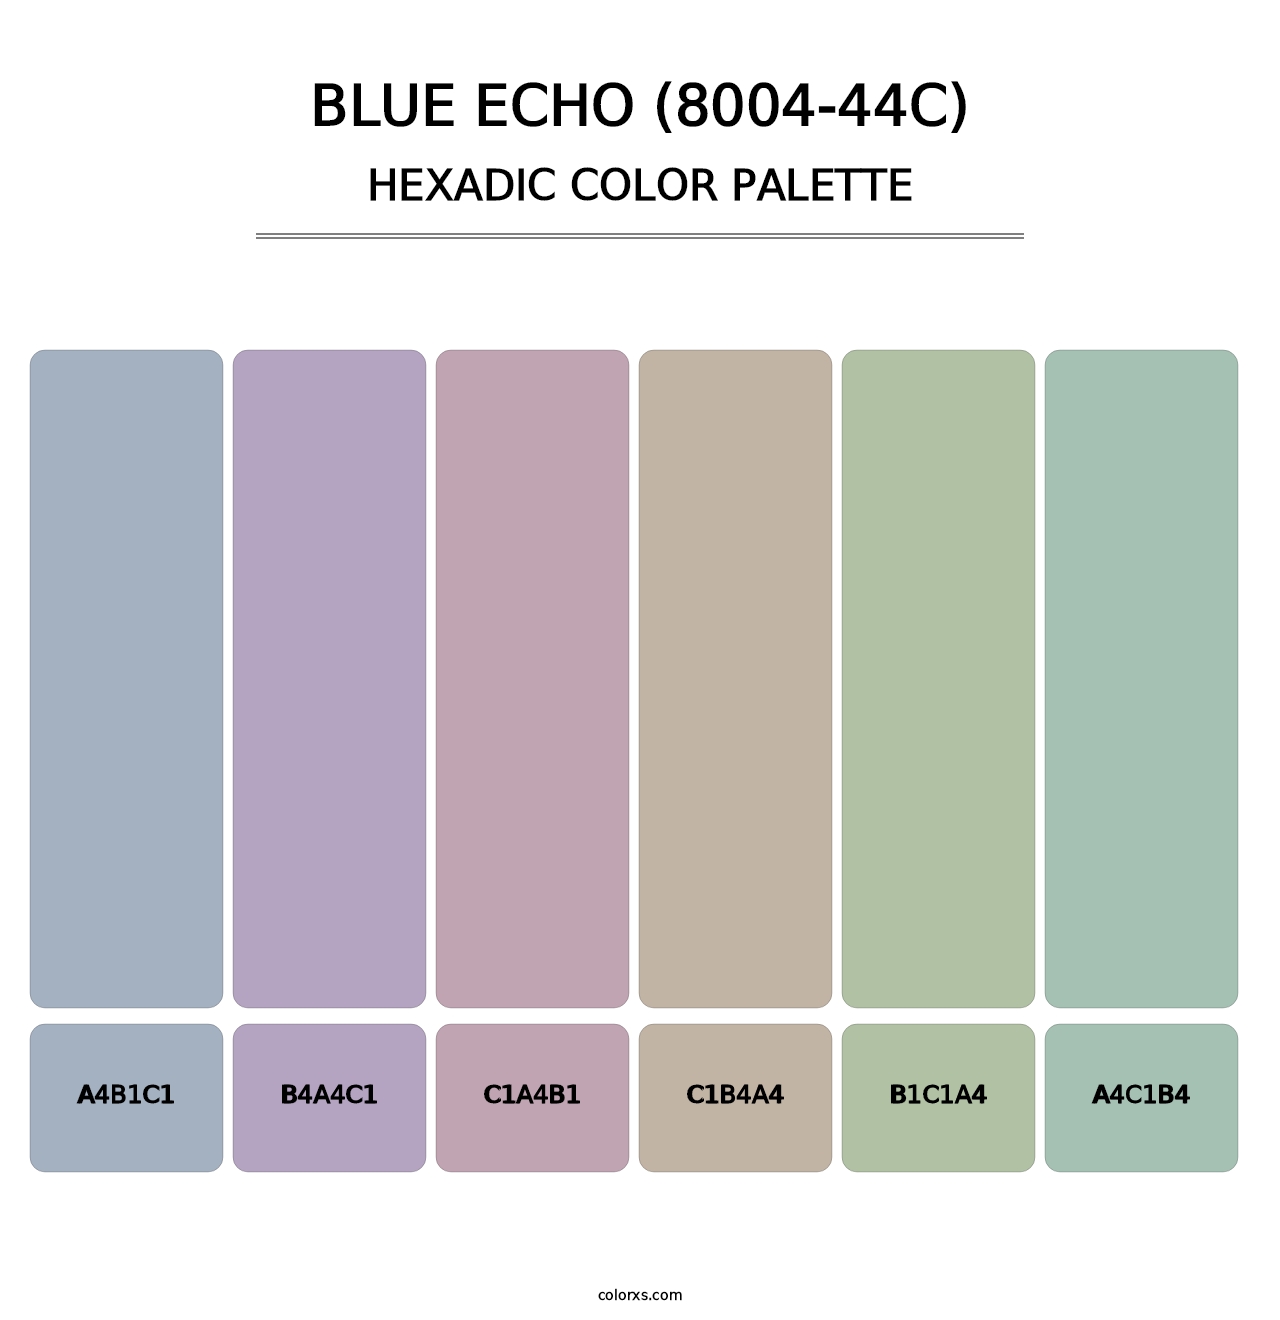 Blue Echo (8004-44C) - Hexadic Color Palette